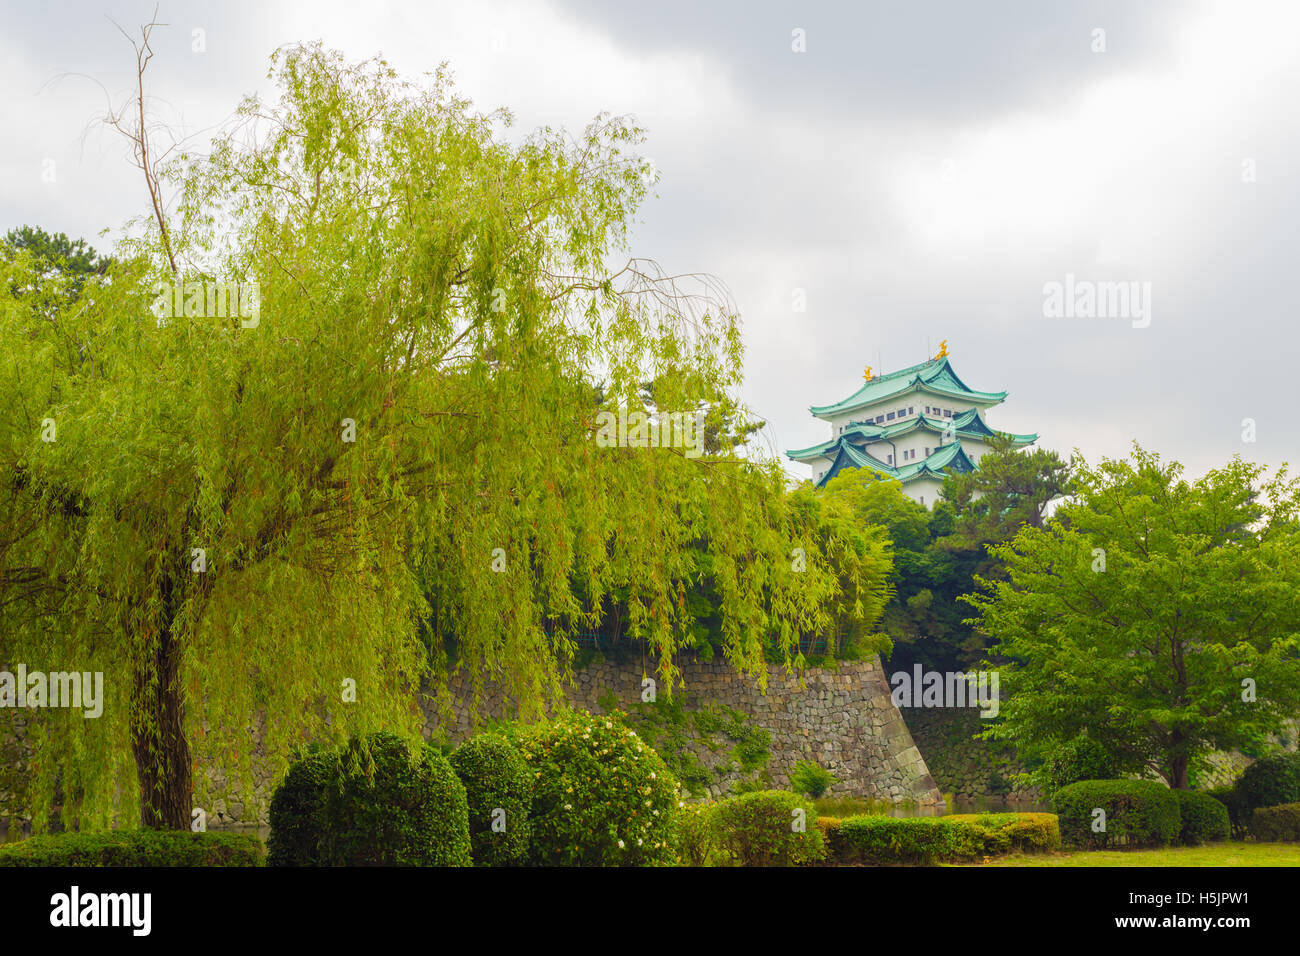 Parte superior del Castillo de Nagoya visibles por encima de límite de vegetación arbórea y rampart muros en días nublados en Nagoya, Japón Foto de stock